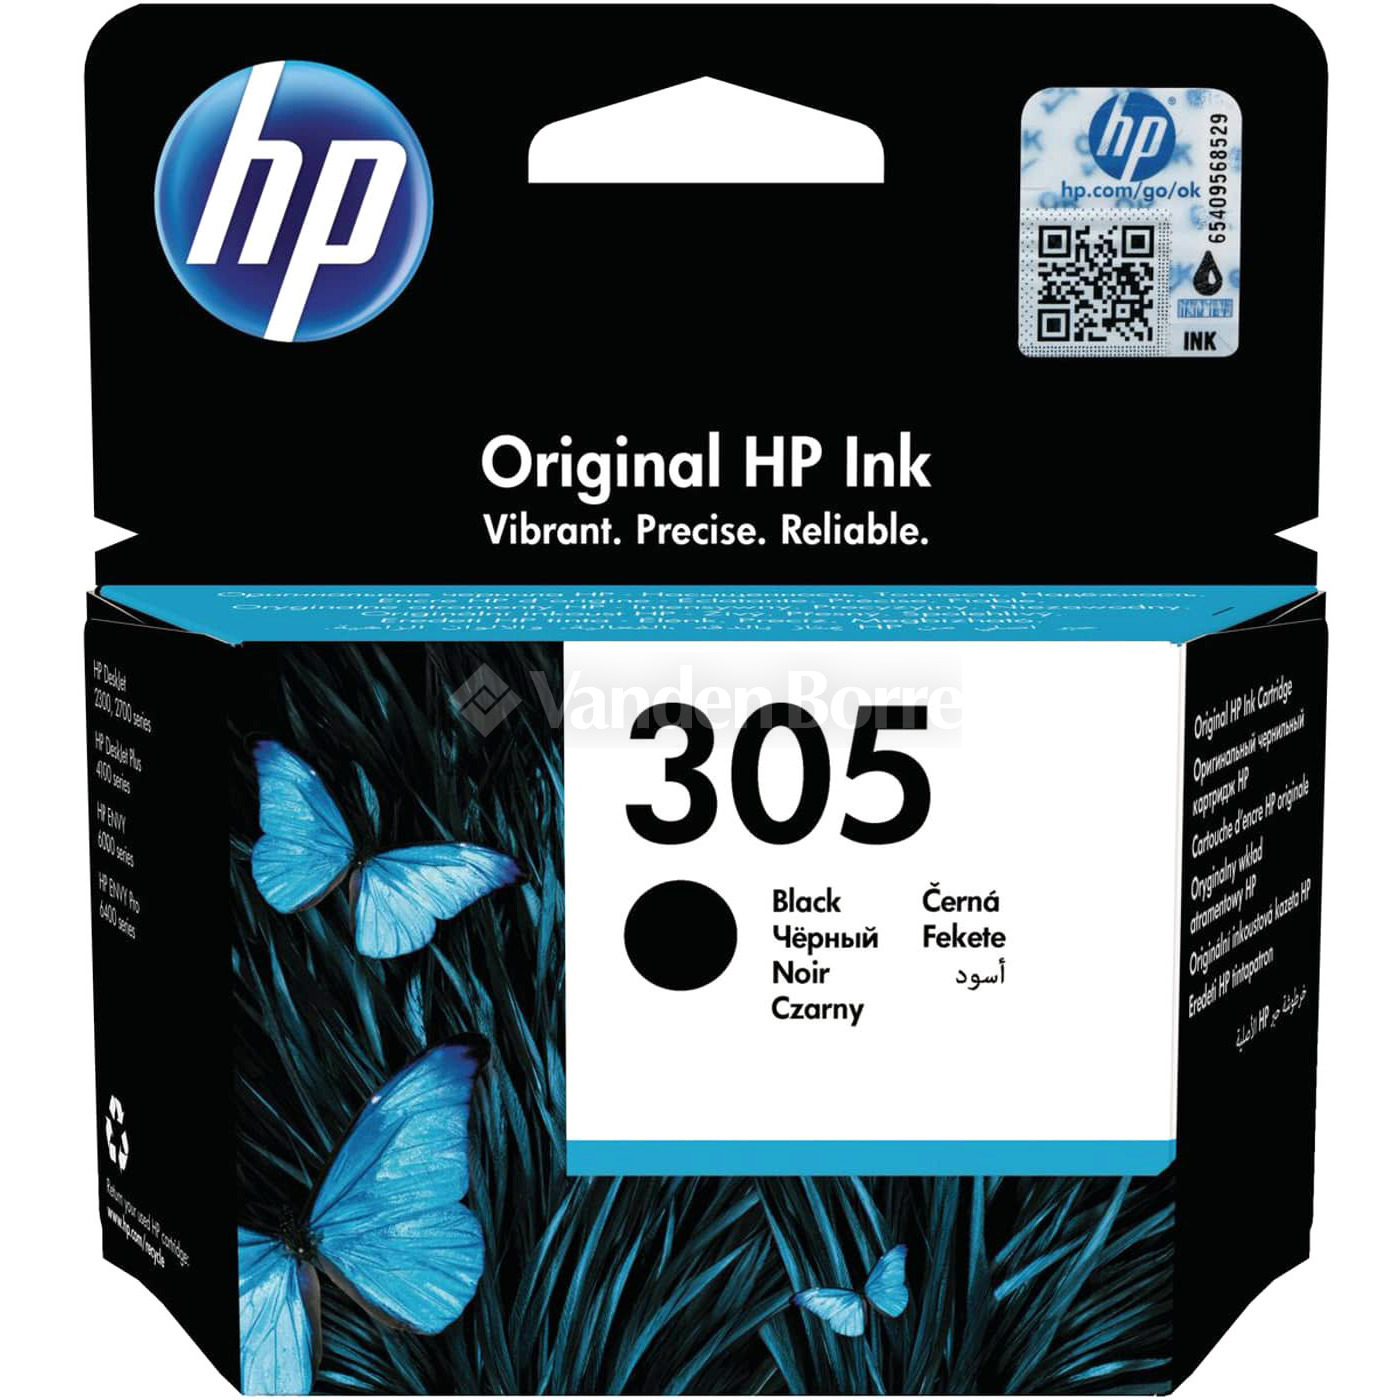 delen Aanbeveling zeker HP INKTCARTRIDGE 305 BLACK - HP Instant Ink | Vanden Borre